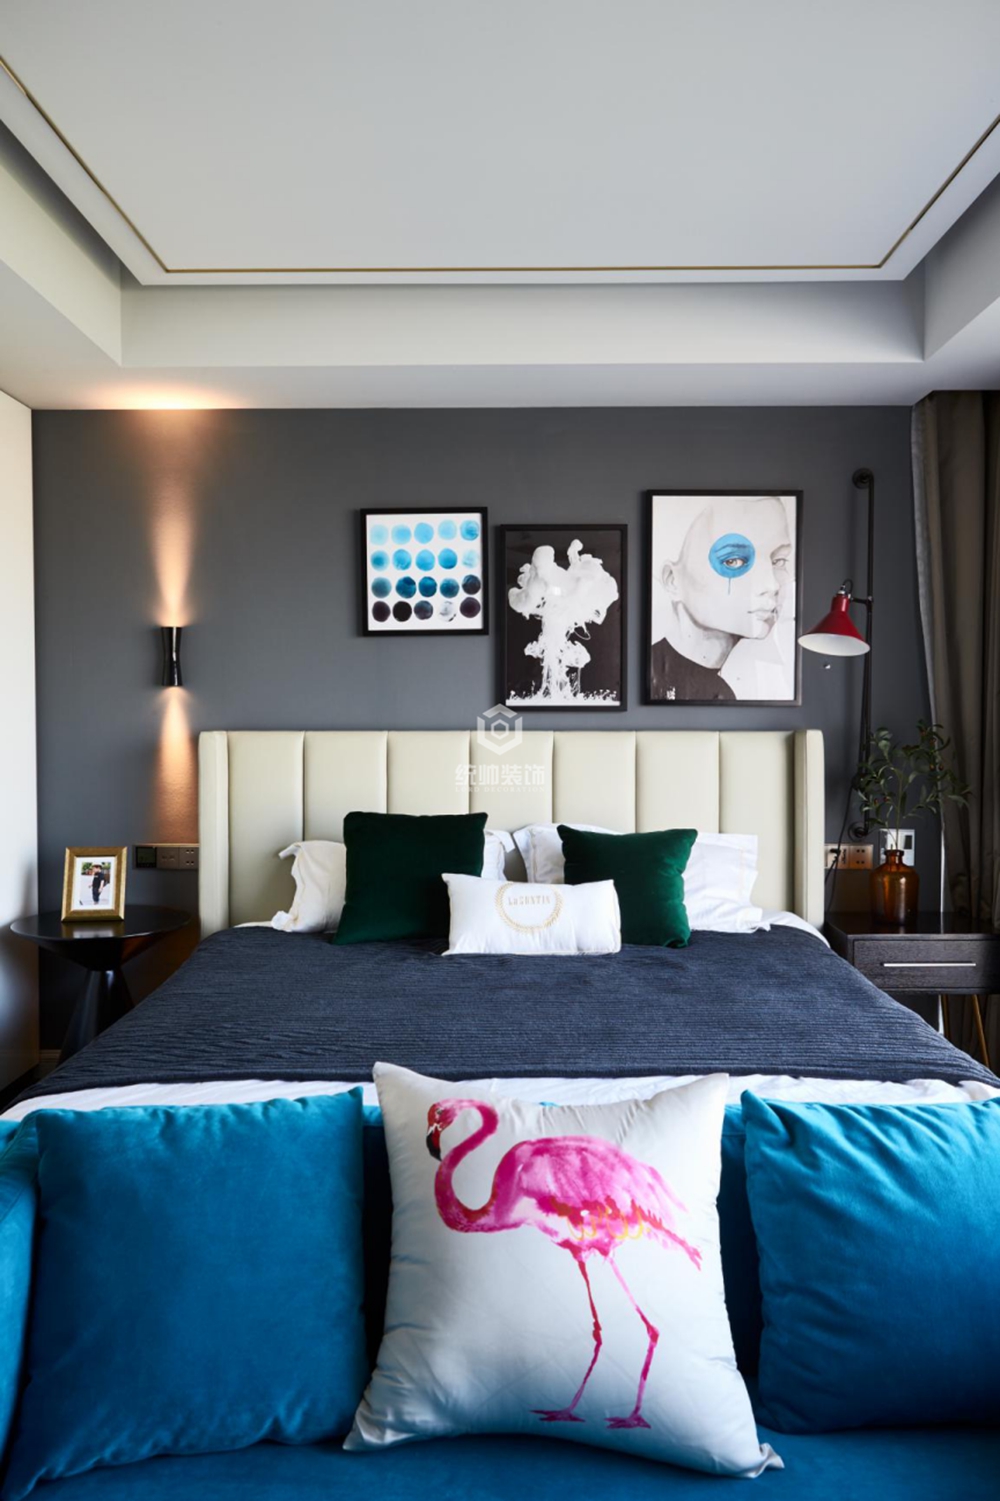 松江区海欣城世纪家园170平方现代简约风格三室二厅卧室装修效果图